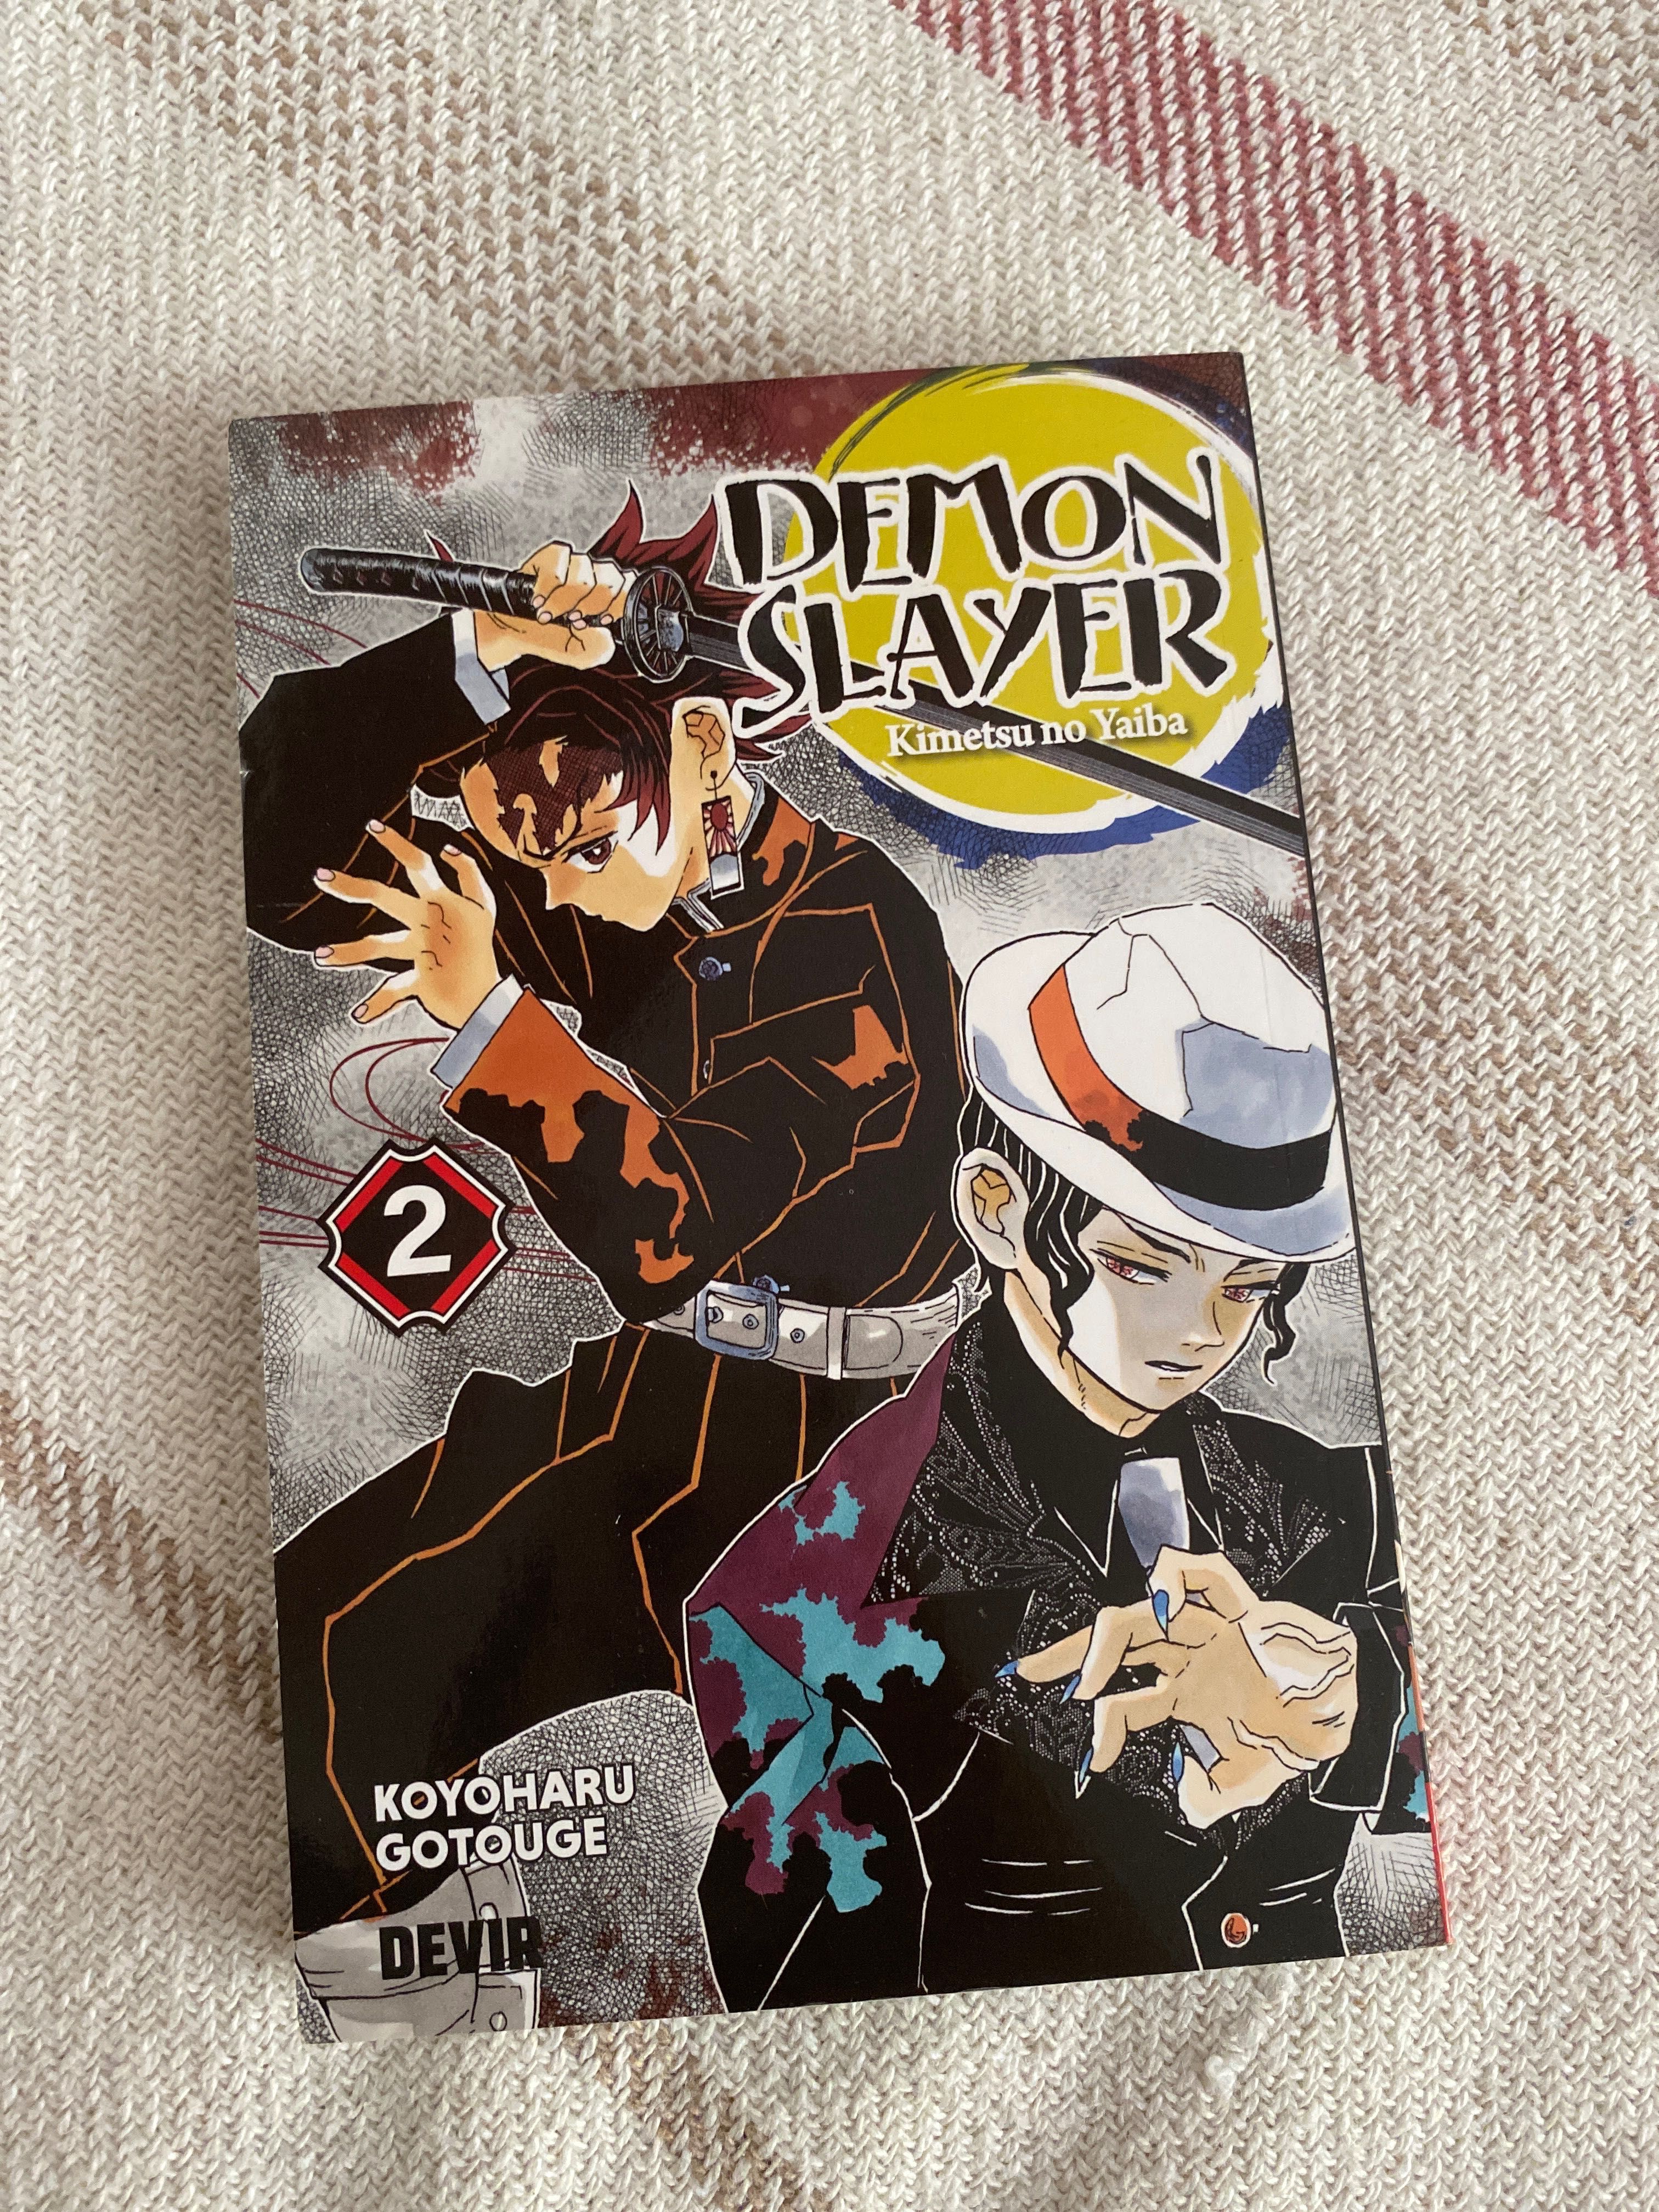 Demon Slayer (kimetsu no yaiba) 1 - 3 vol